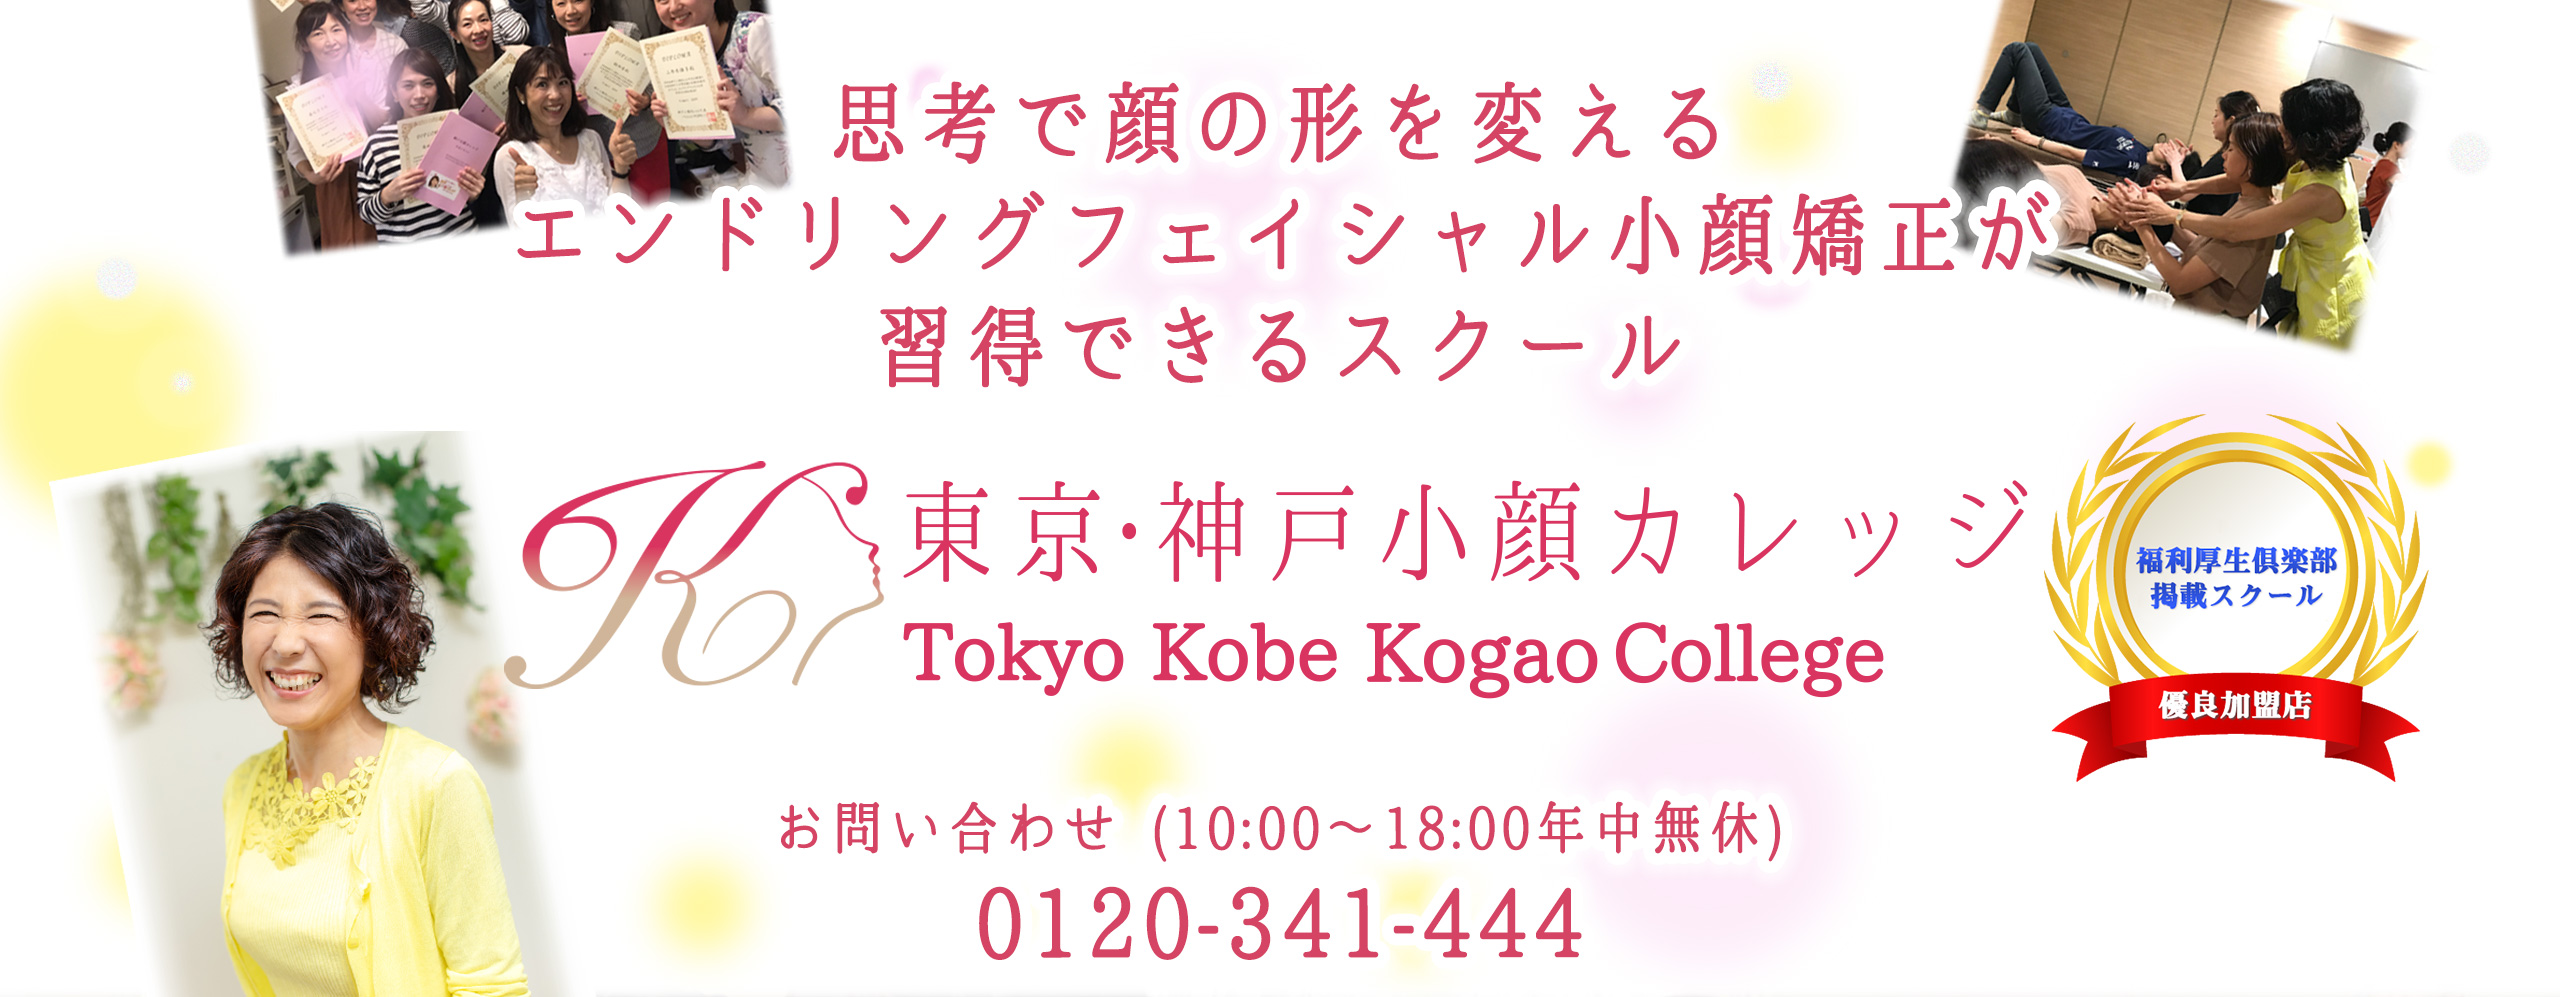 神戸小顔カレッジ | 結果が出る小顔矯正を学んで予約がいっぱいのサロンを作るスクール